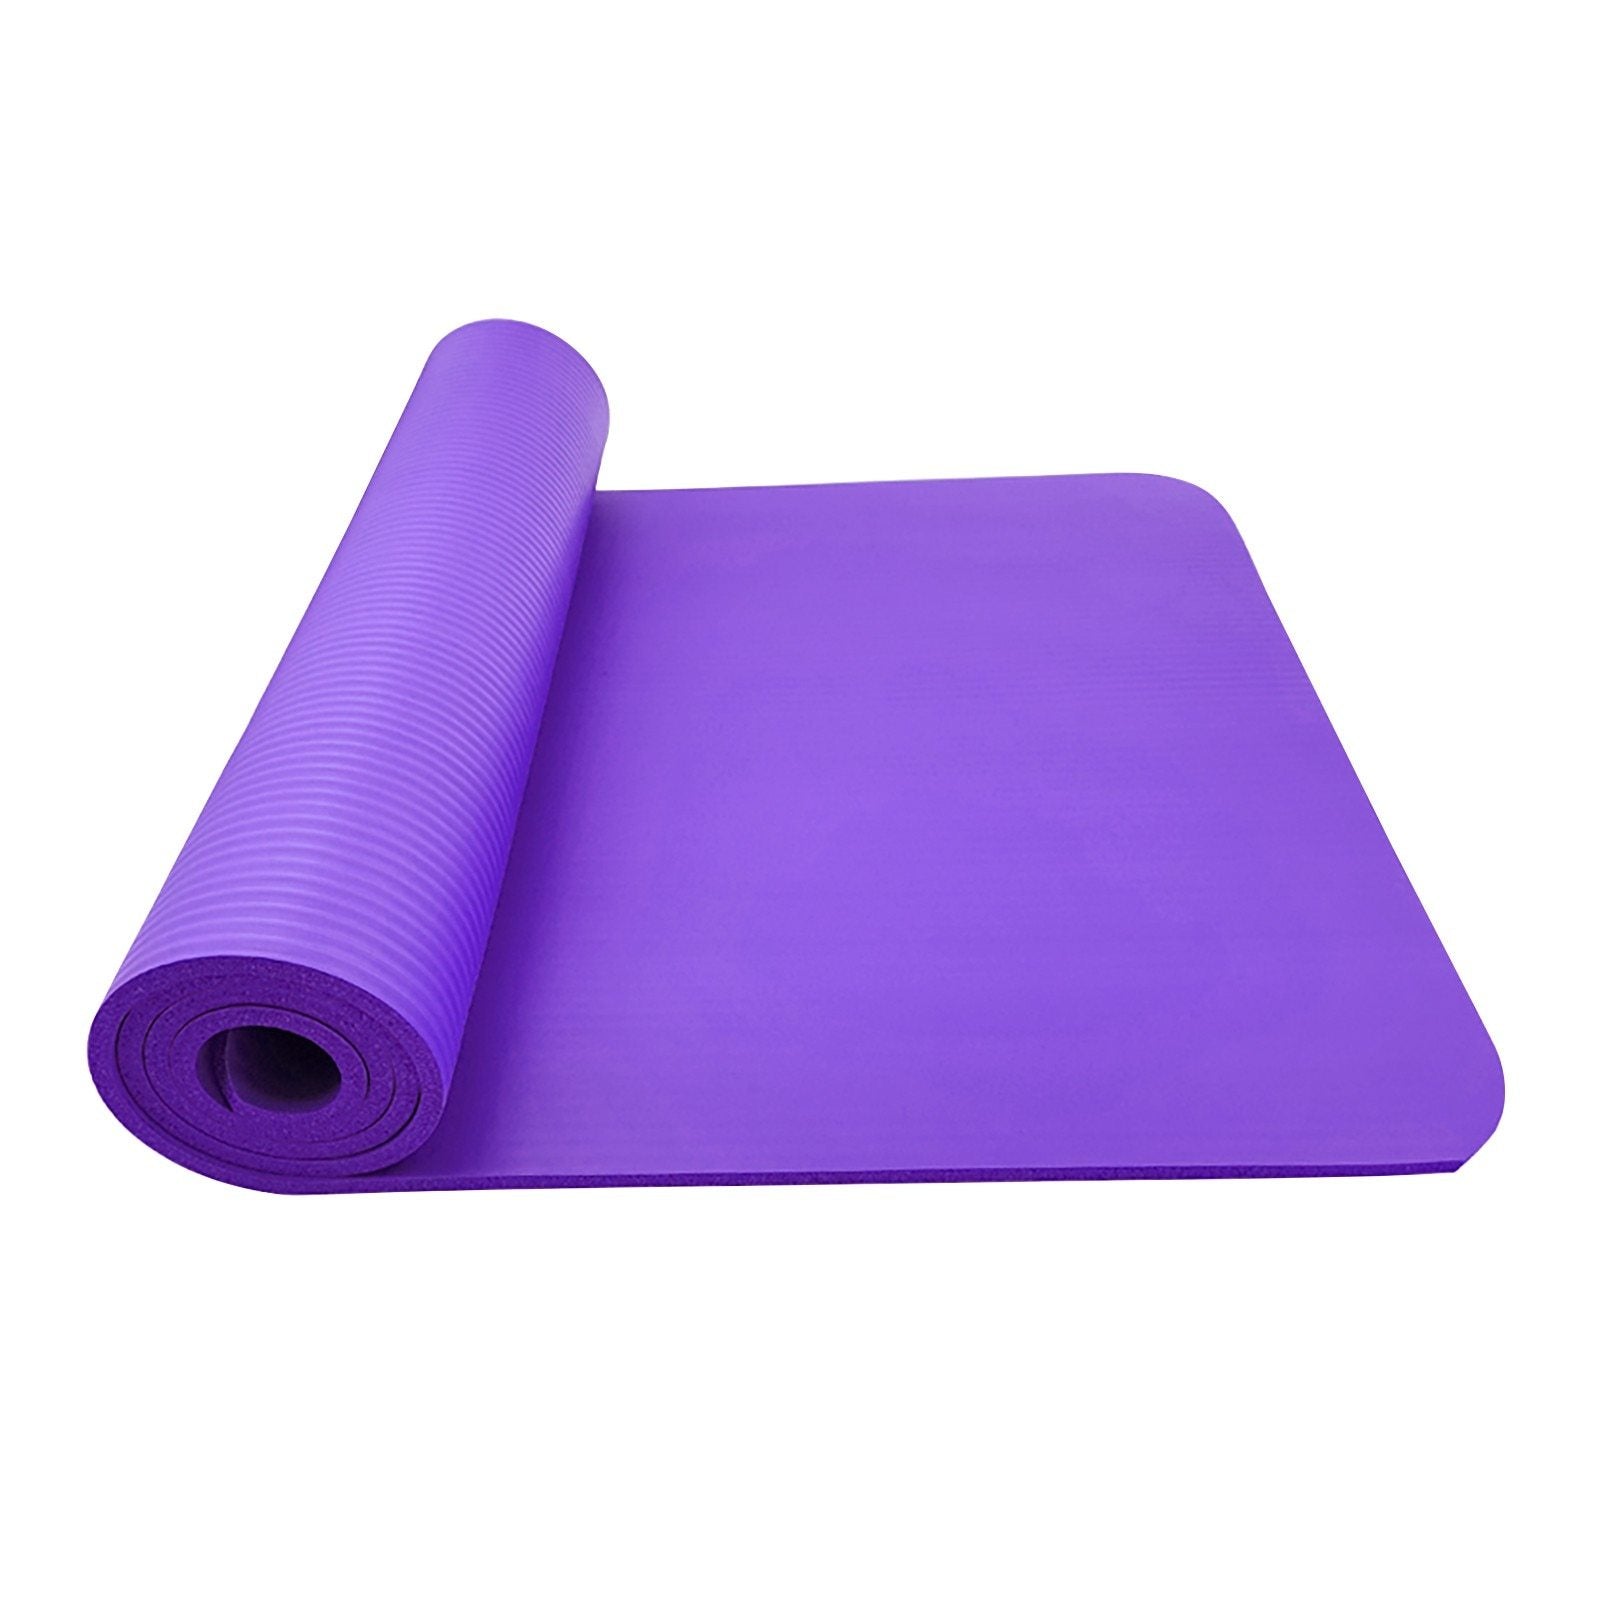 Large Size Non-Slip Yoga Fitness Mat